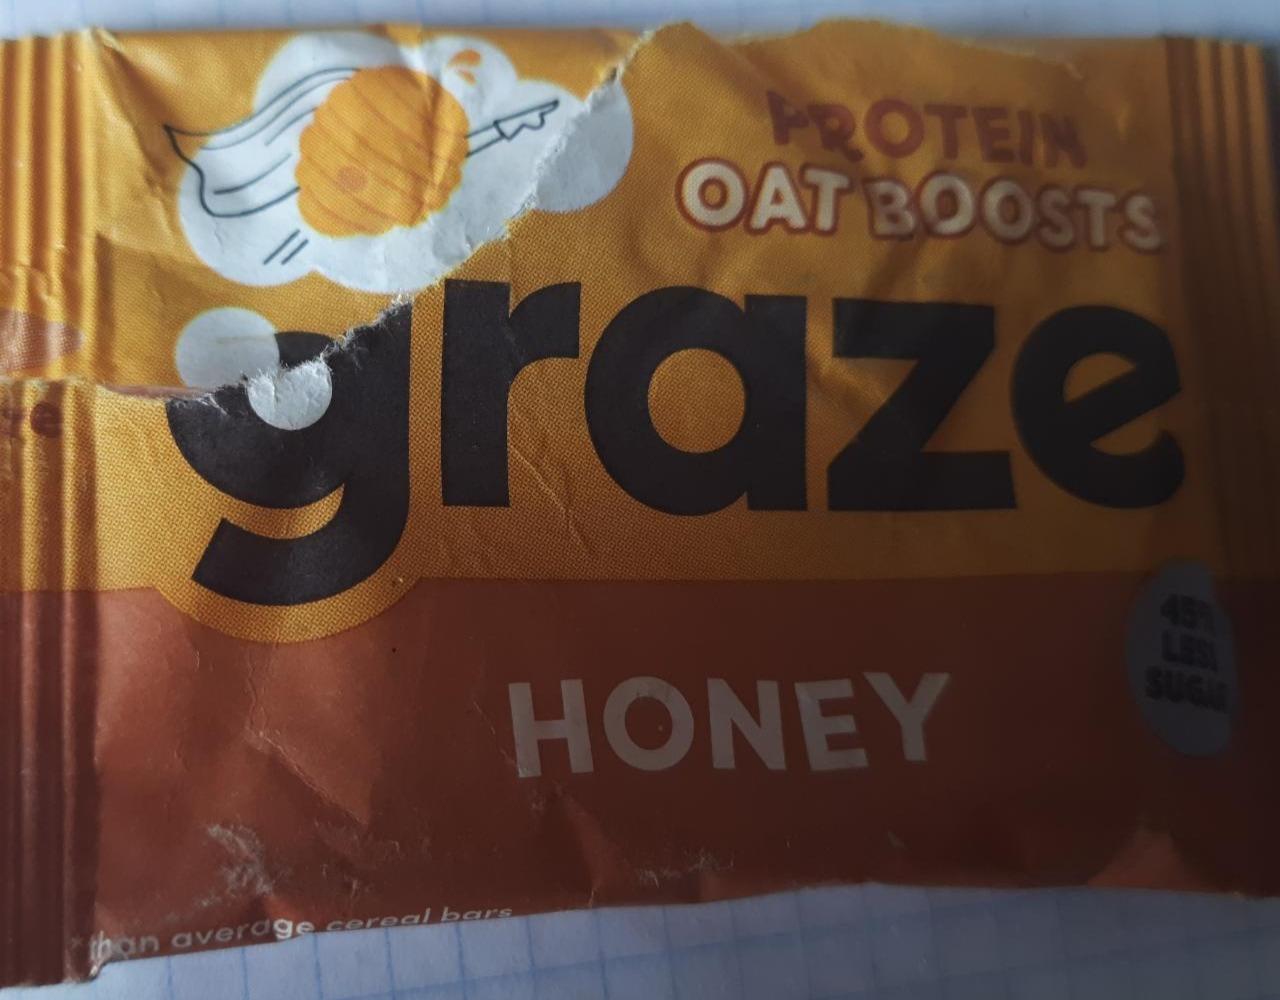 Fotografie - Graze honey protein oat boosts